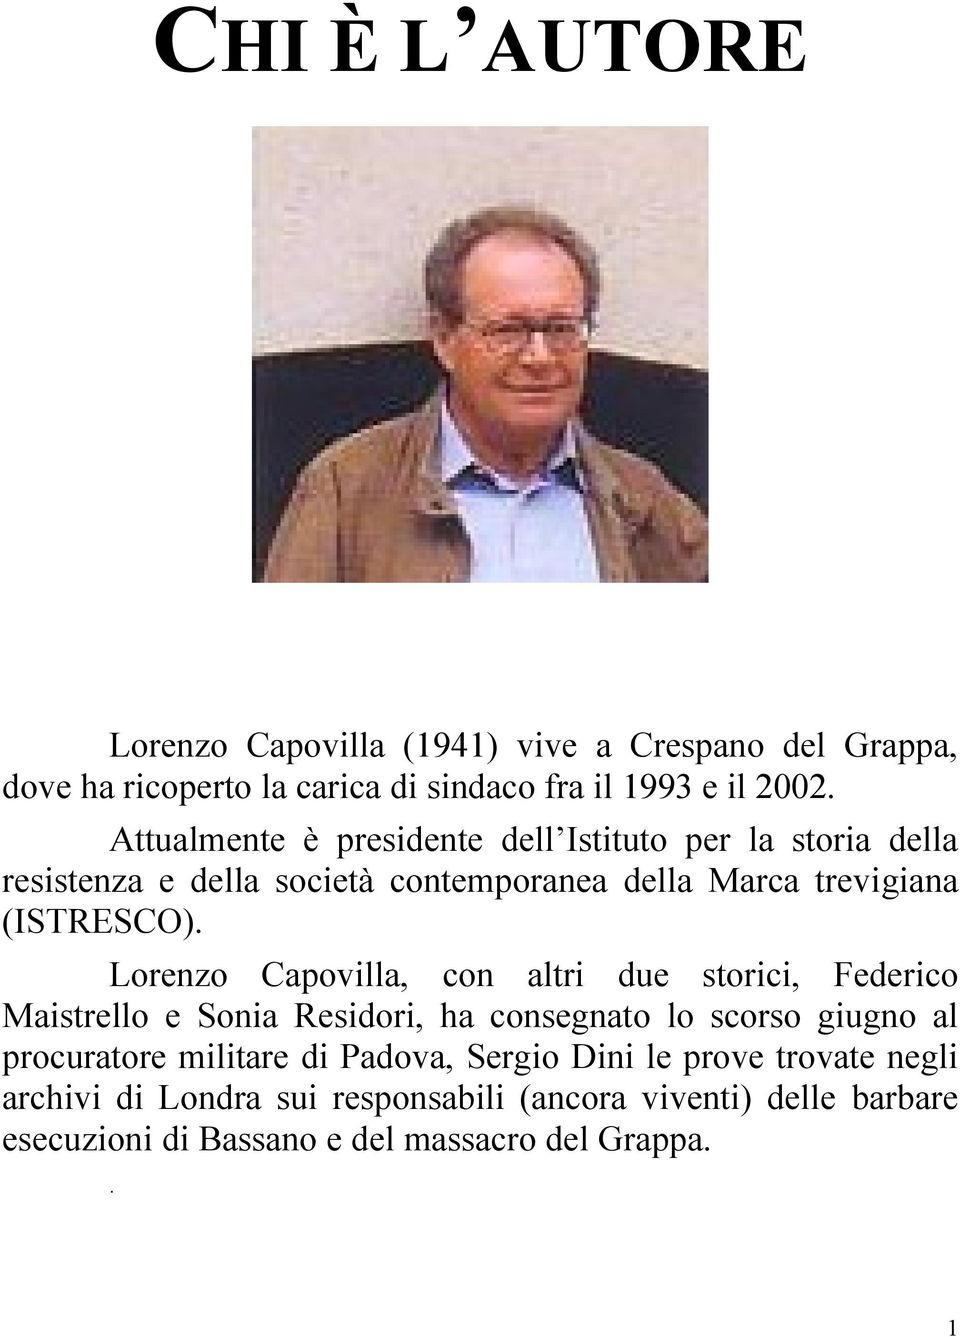 Lorenzo Capovilla, con altri due storici, Federico Maistrello e Sonia Residori, ha consegnato lo scorso giugno al procuratore militare di